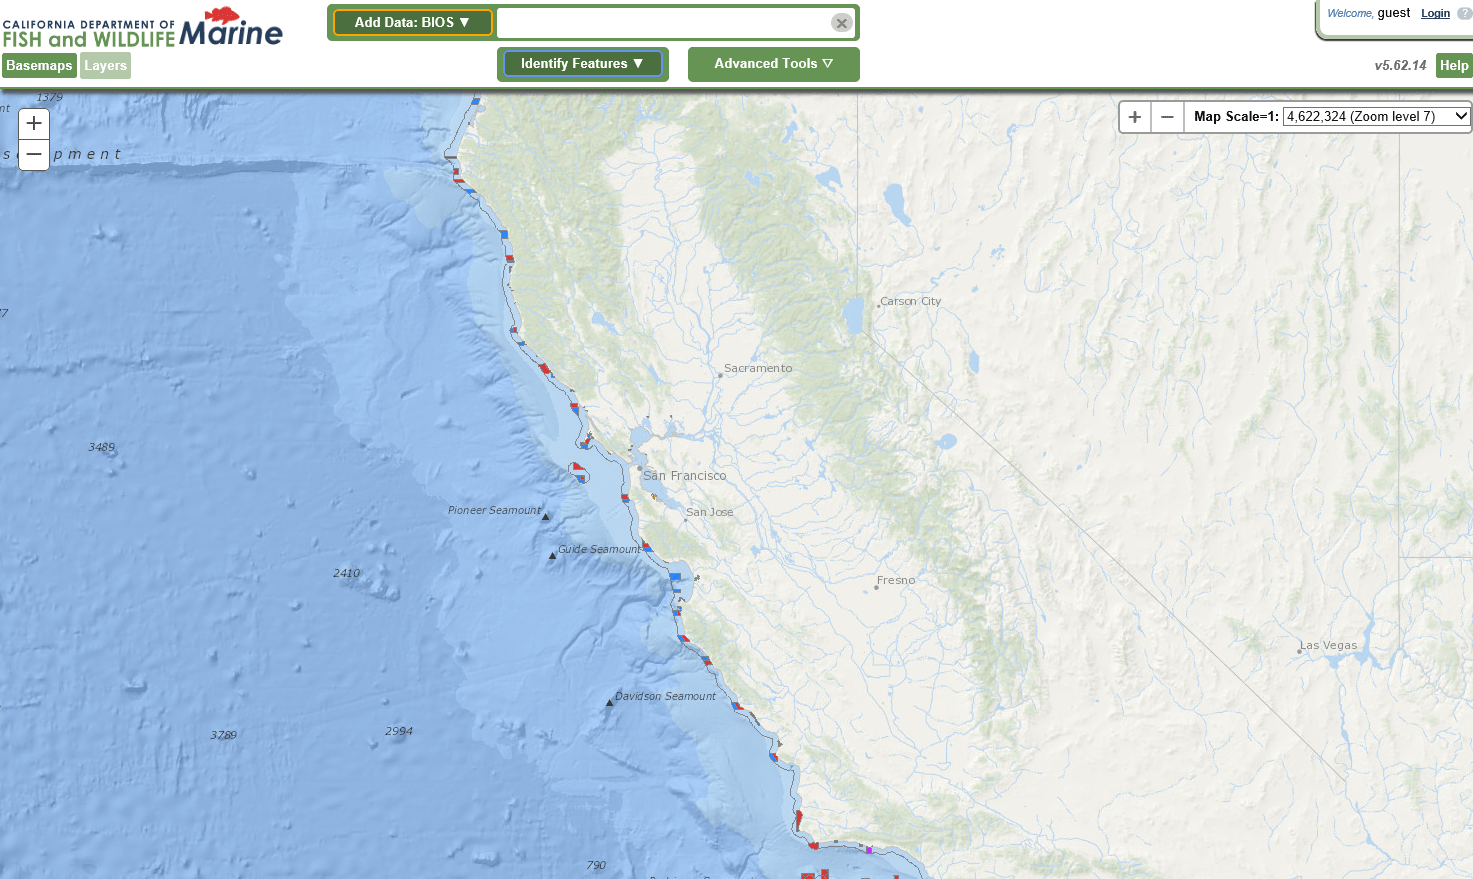 CDFW Marine & Coastal Map Viewer